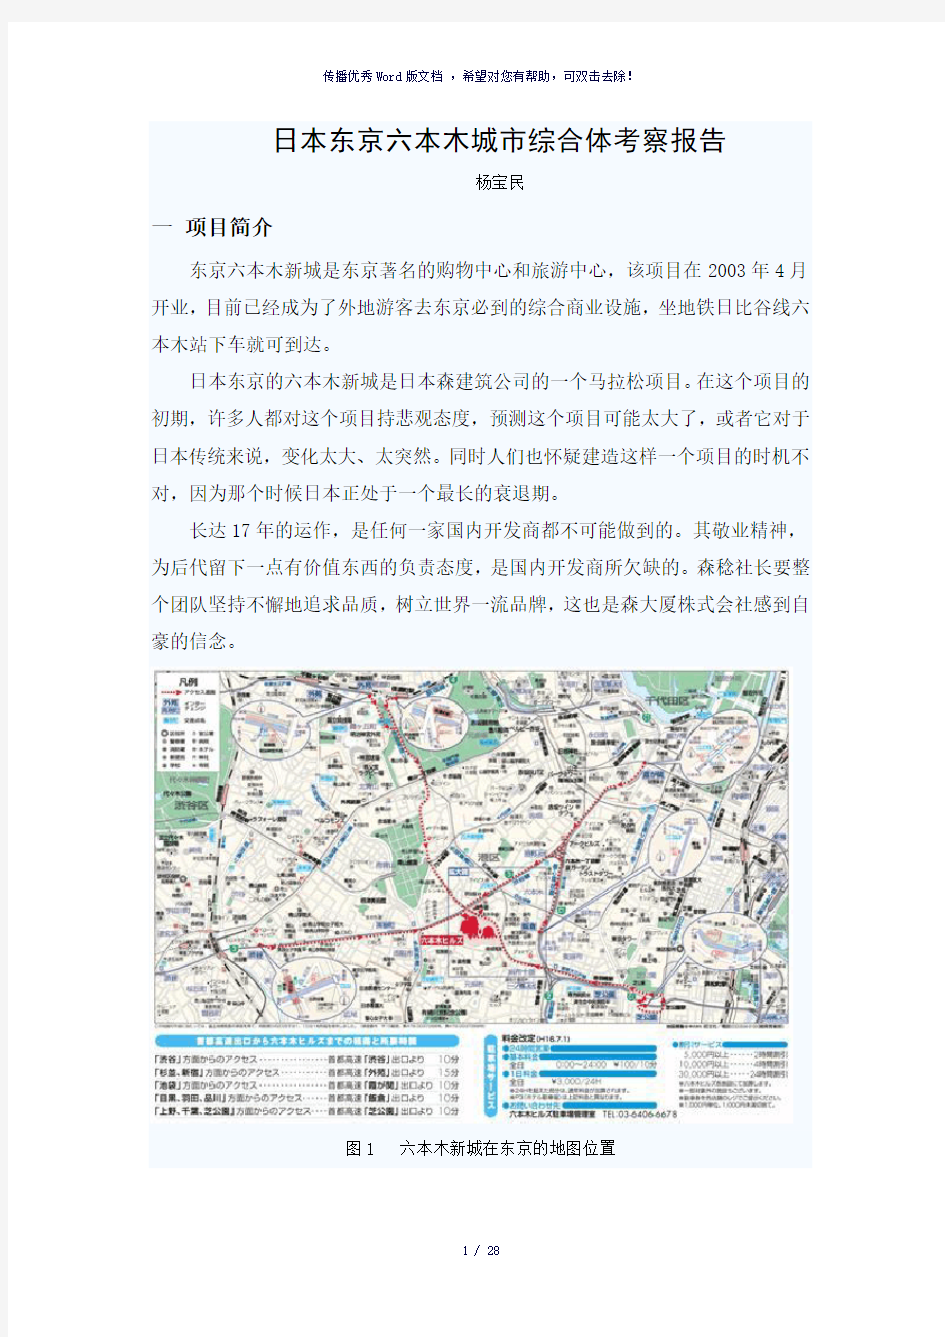 城市综合体案例分析-东京六本木